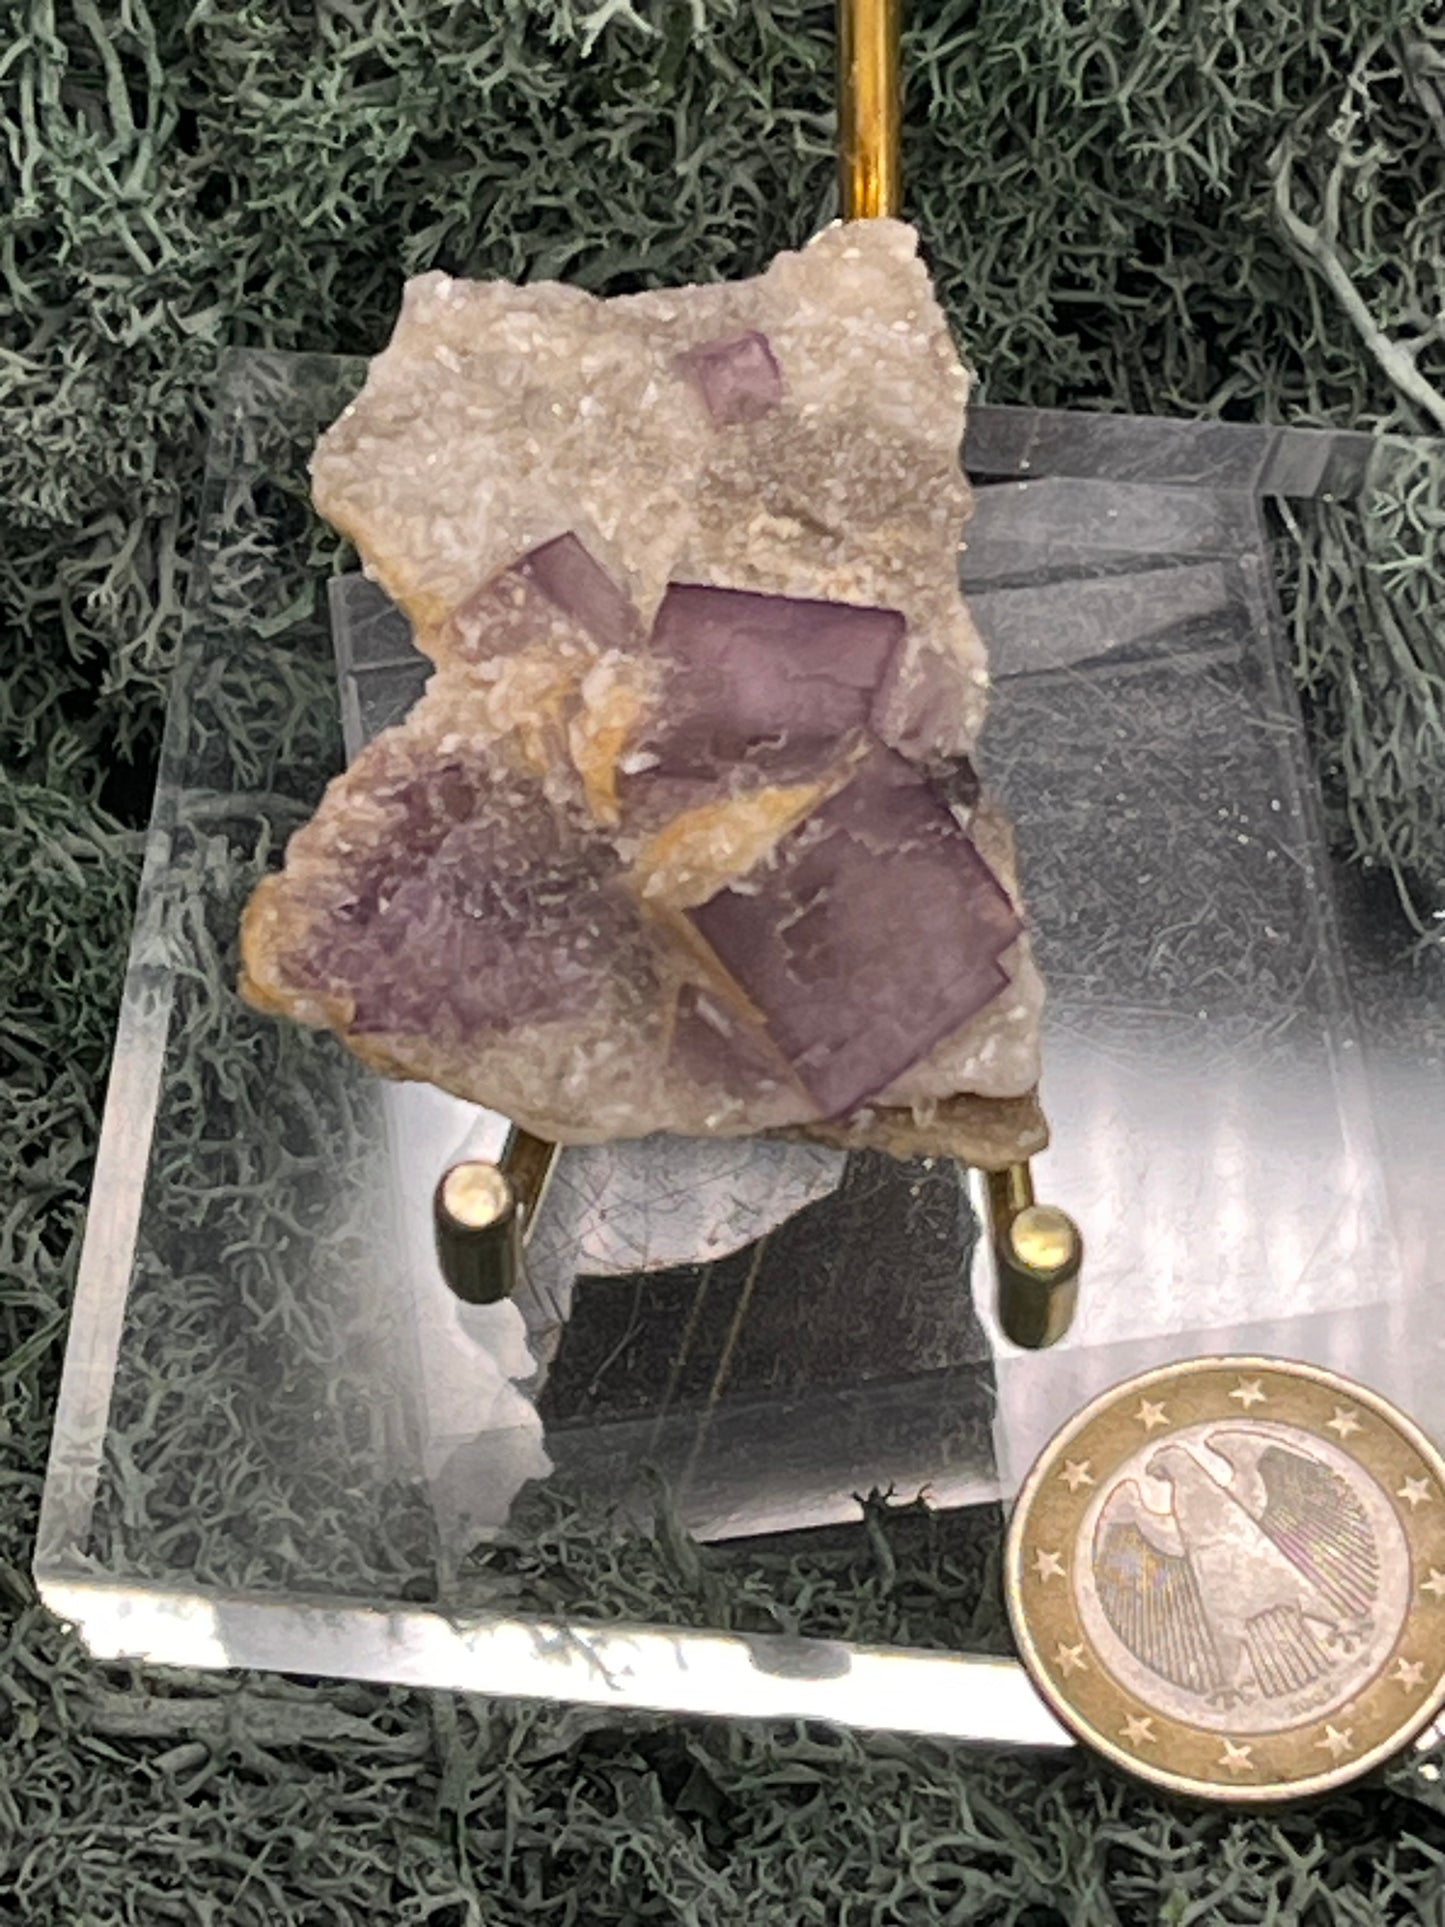 Violetter Fluorit aus Mexiko mit weissen Quarzanlagerungen (24g) - Stufe mit grossen Fluoritwürfeln